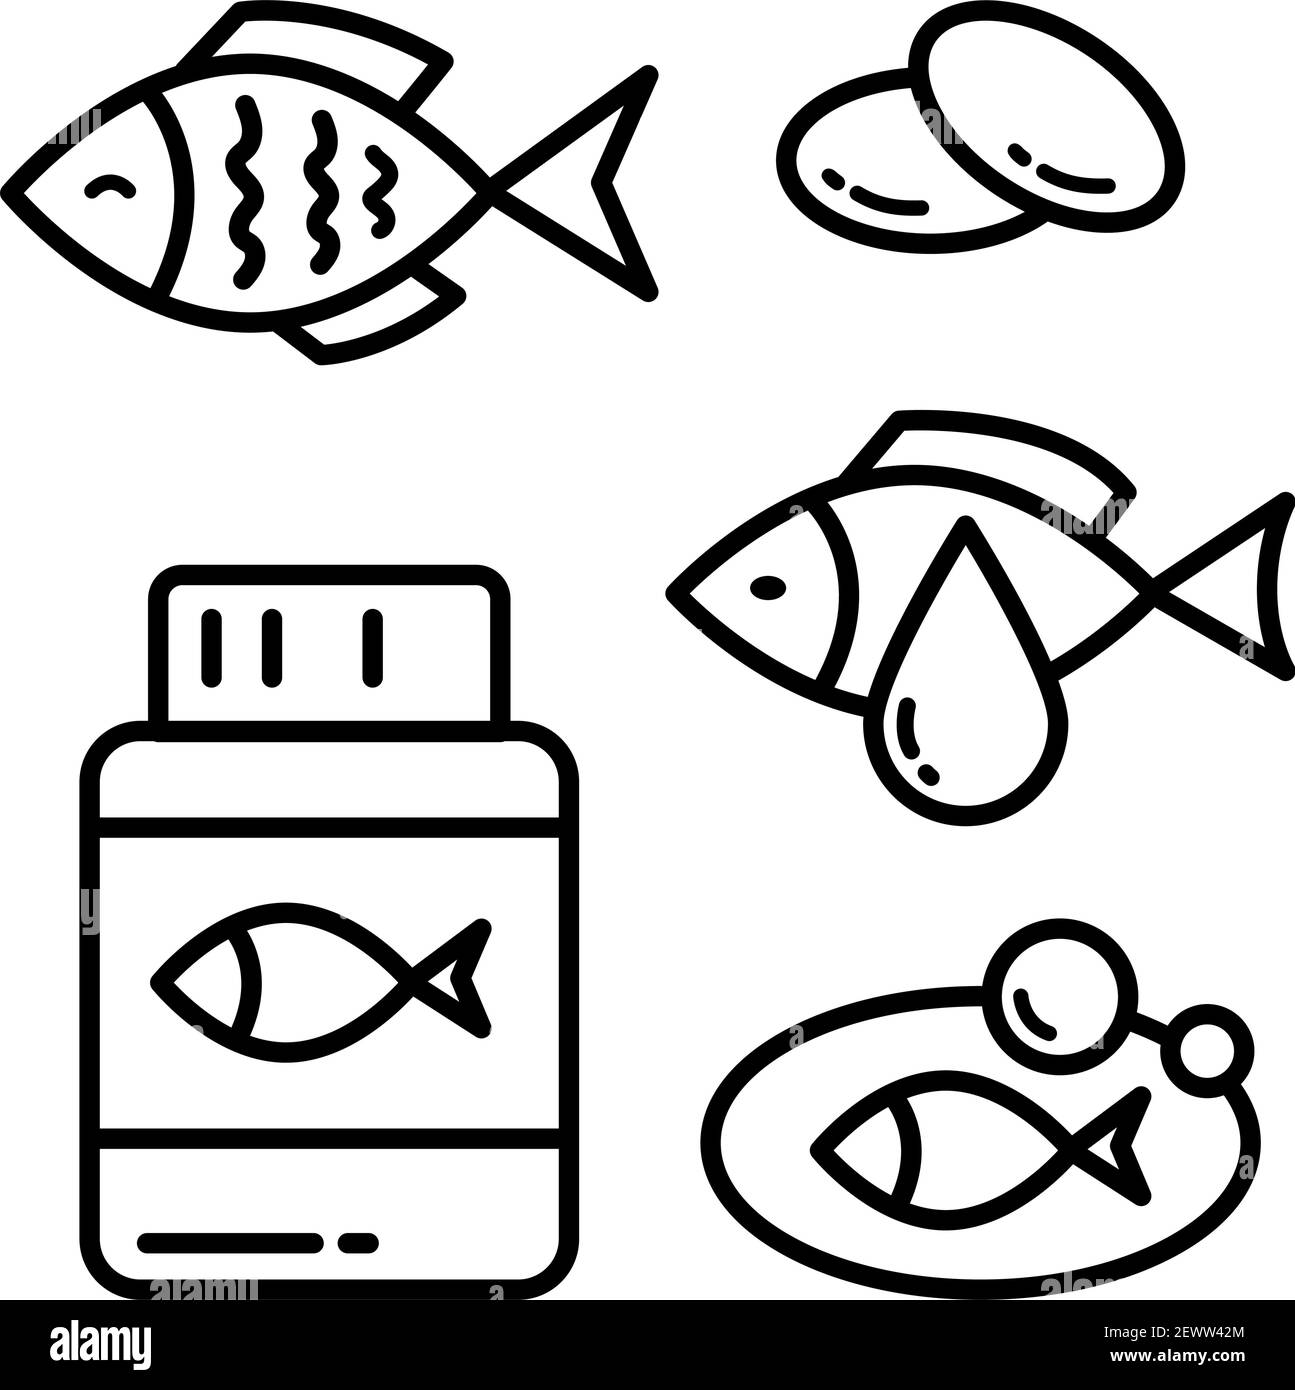 Omega 3 icon logo design. Fish oil vector design. Fish outline icon set Stock Vector